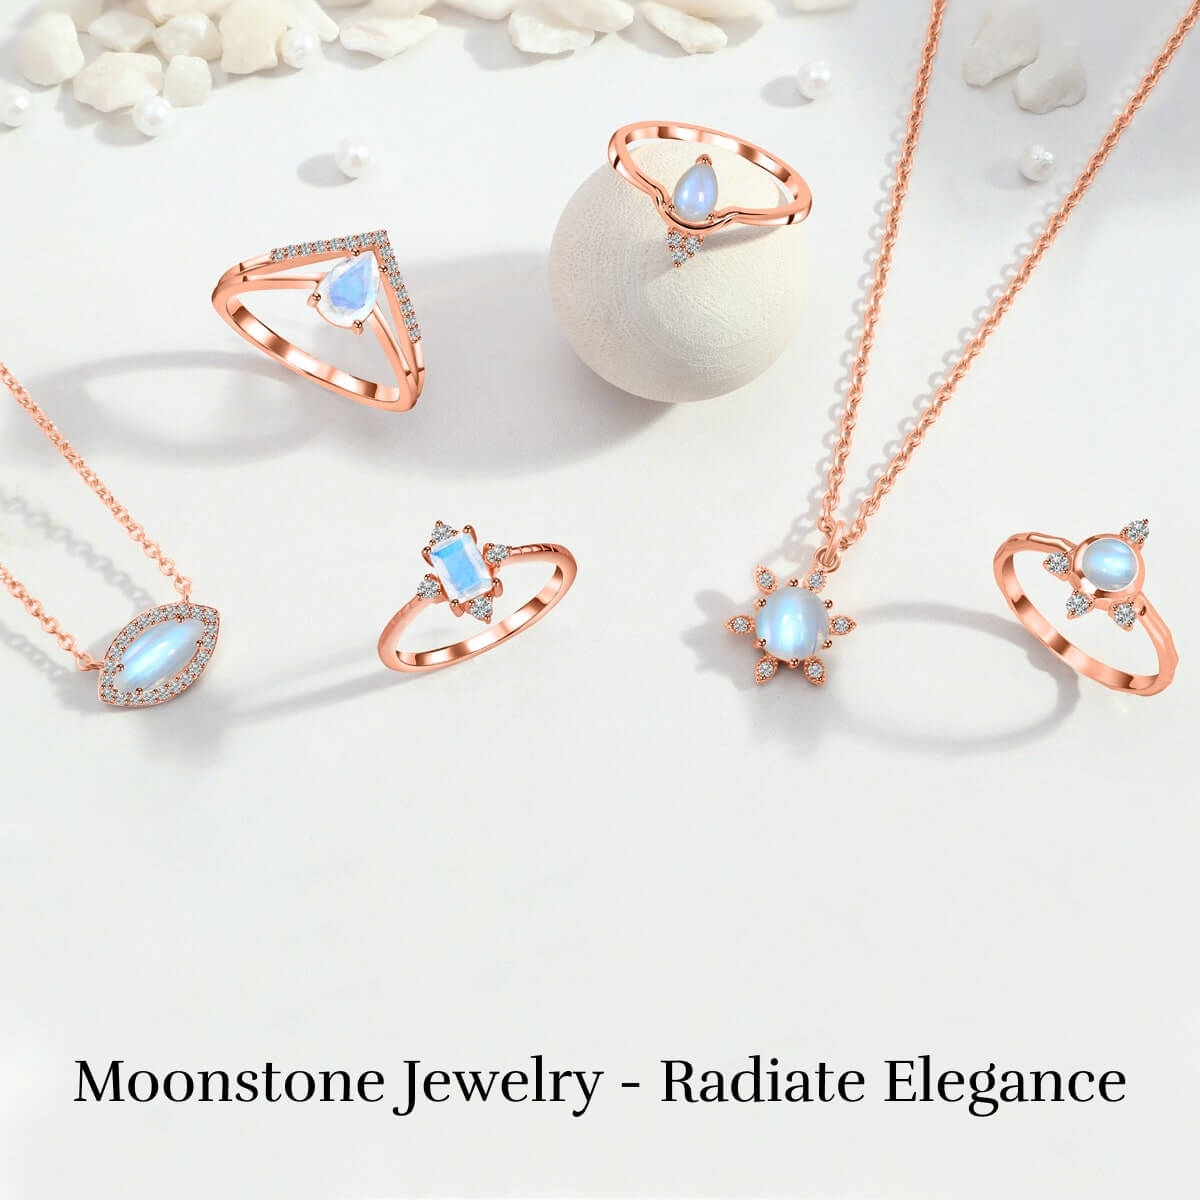 Moonstone jewelry